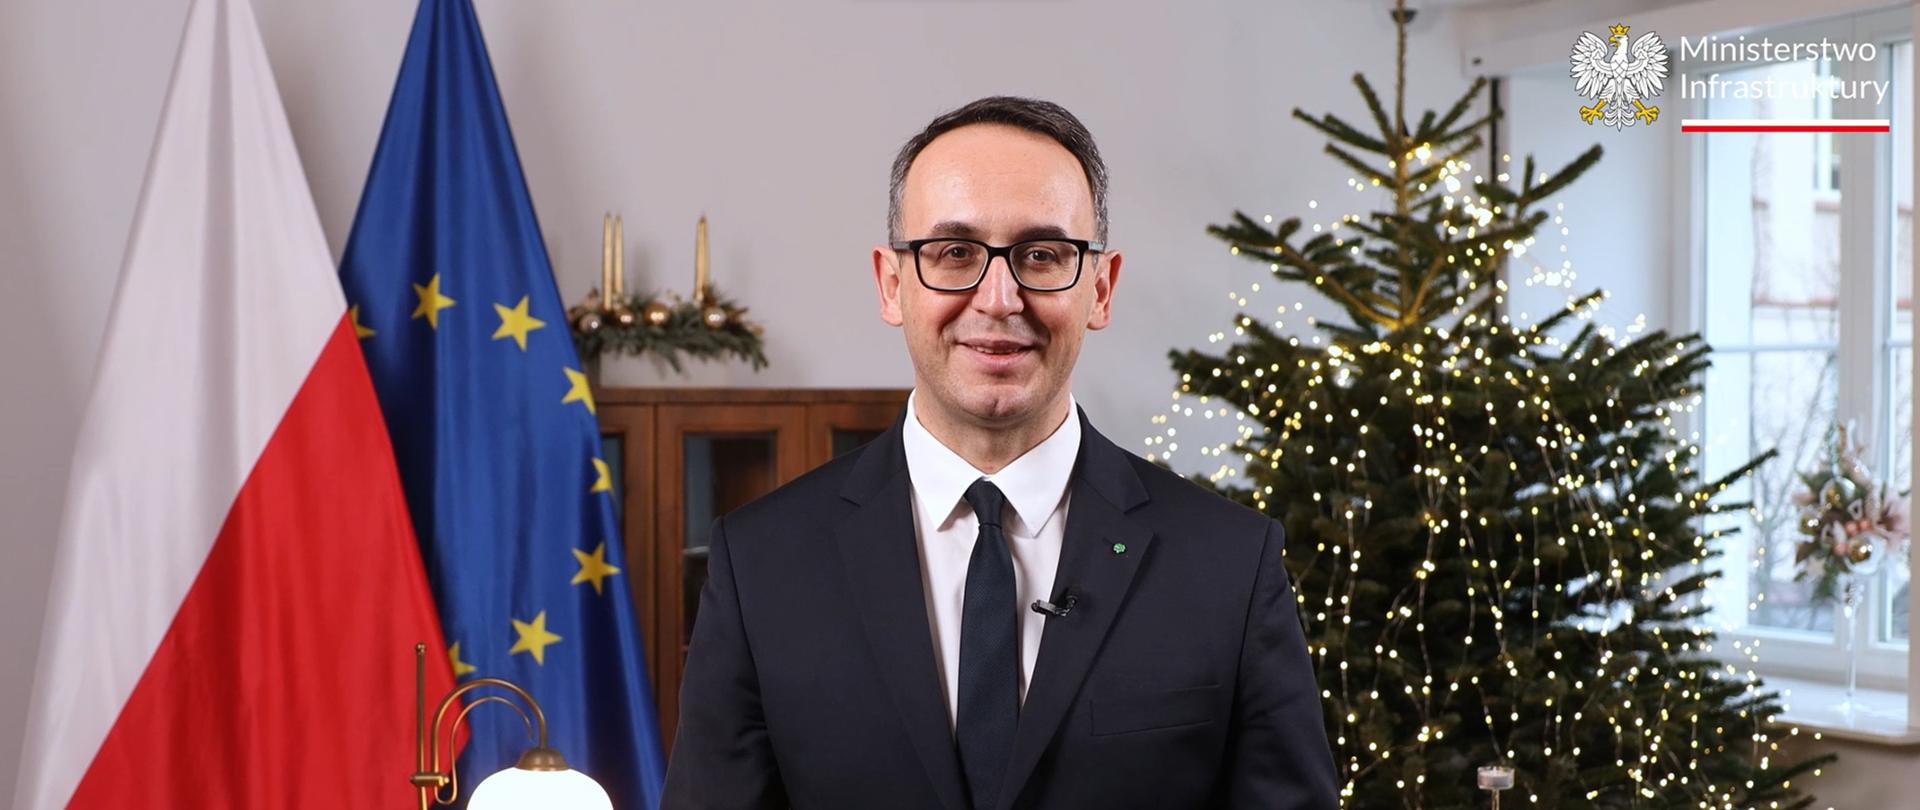 Życzenia ministra infrastruktury Dariusza Klimczaka z okazji Świąt Bożego Narodzenia